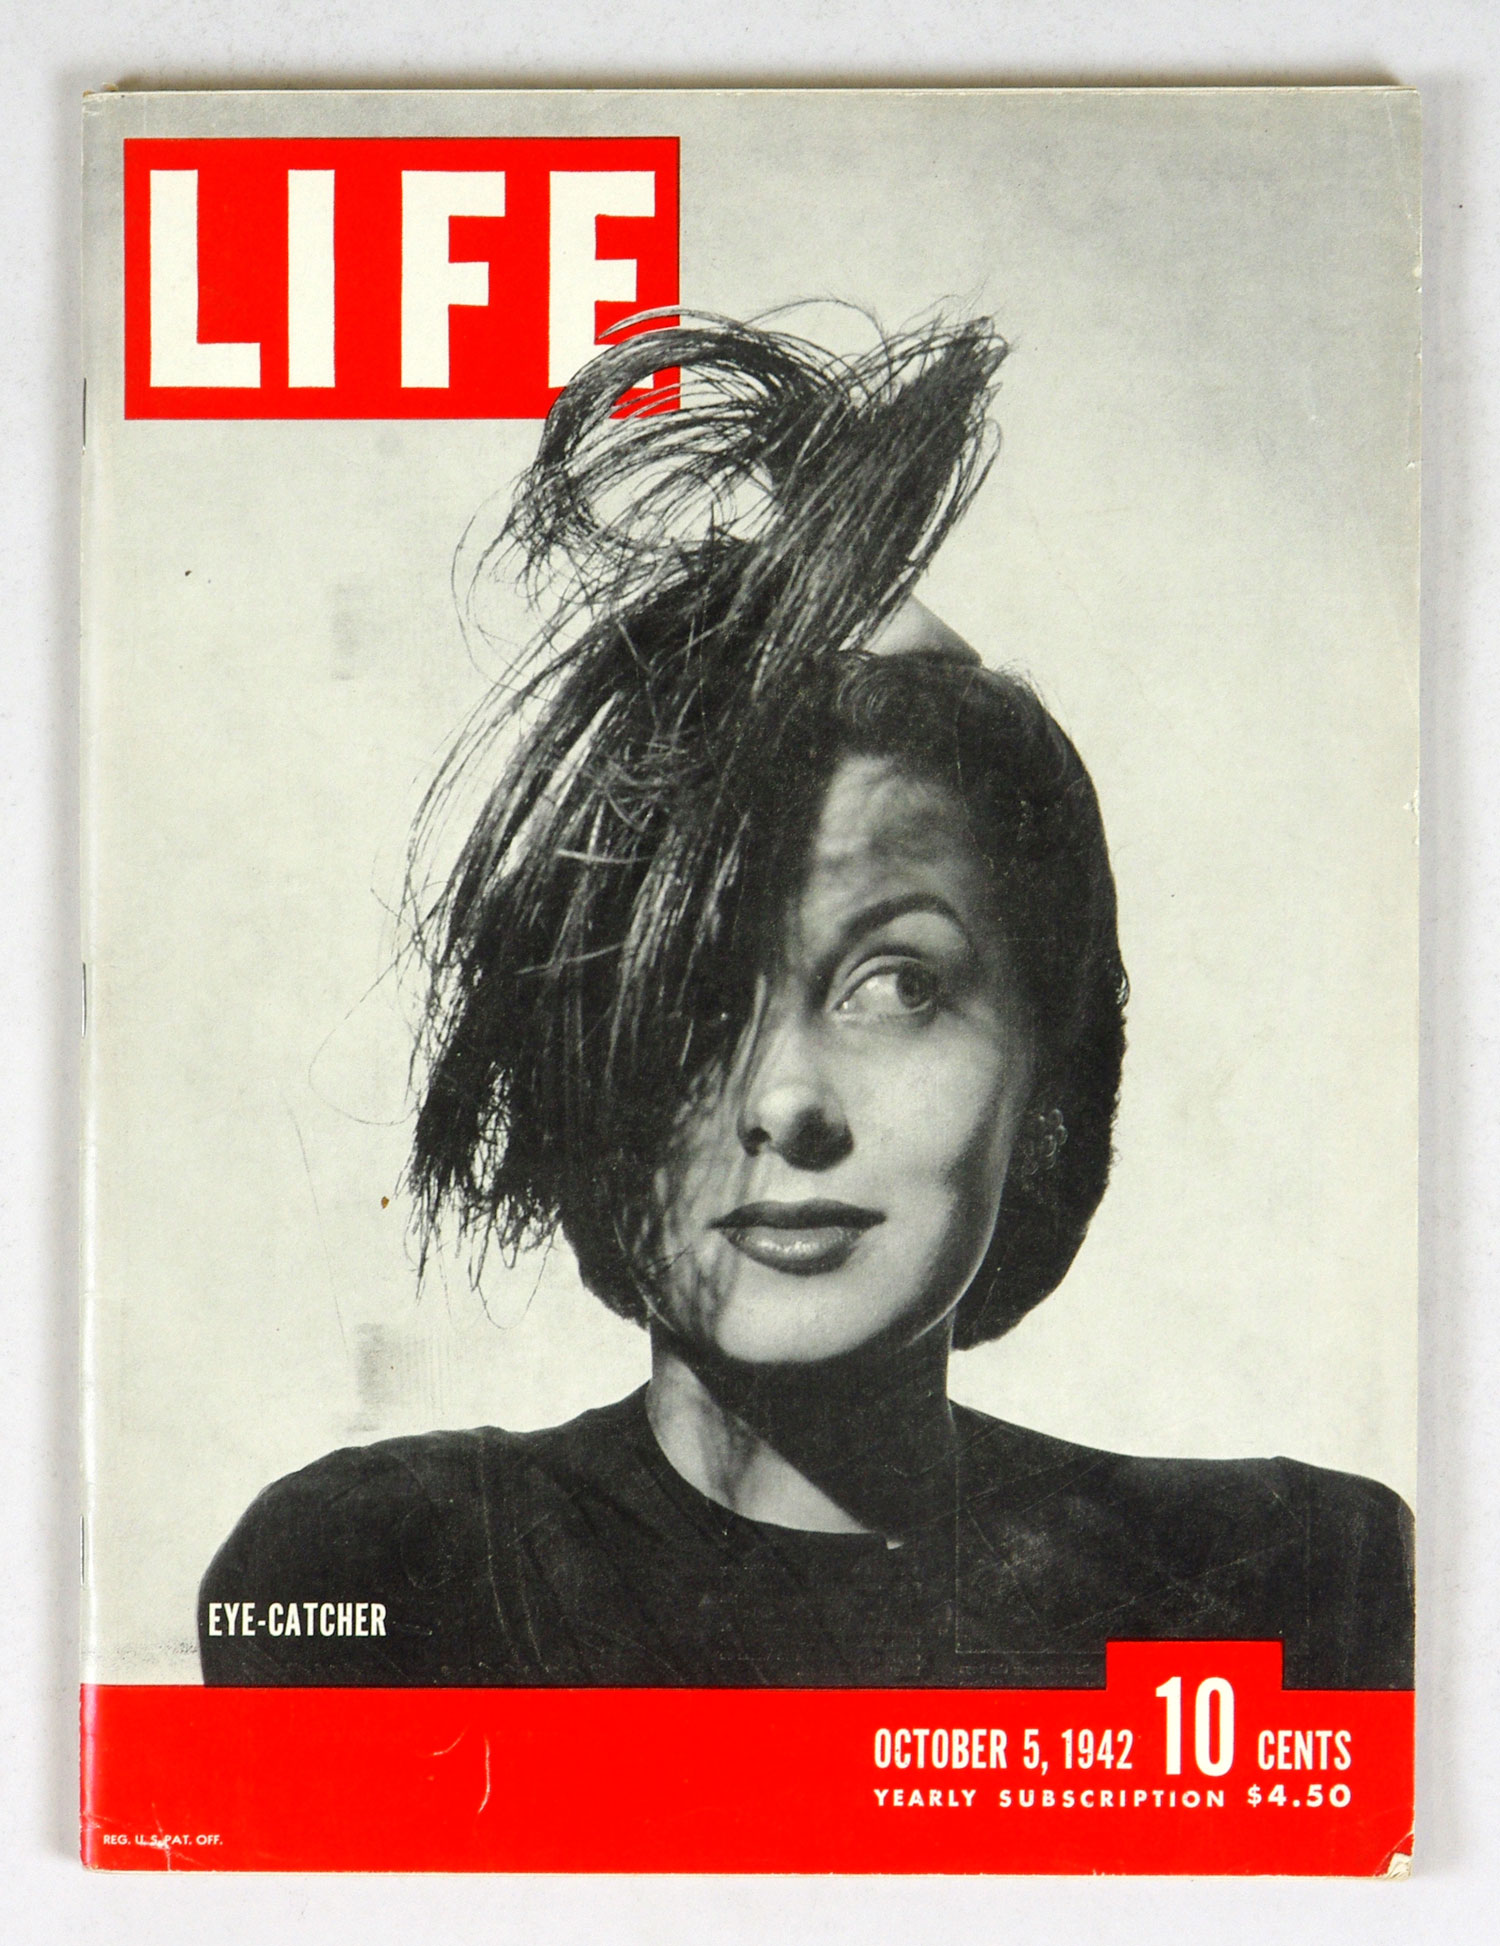 LIFE Magazine Back Issue 1942 October 5 Eye Catcher